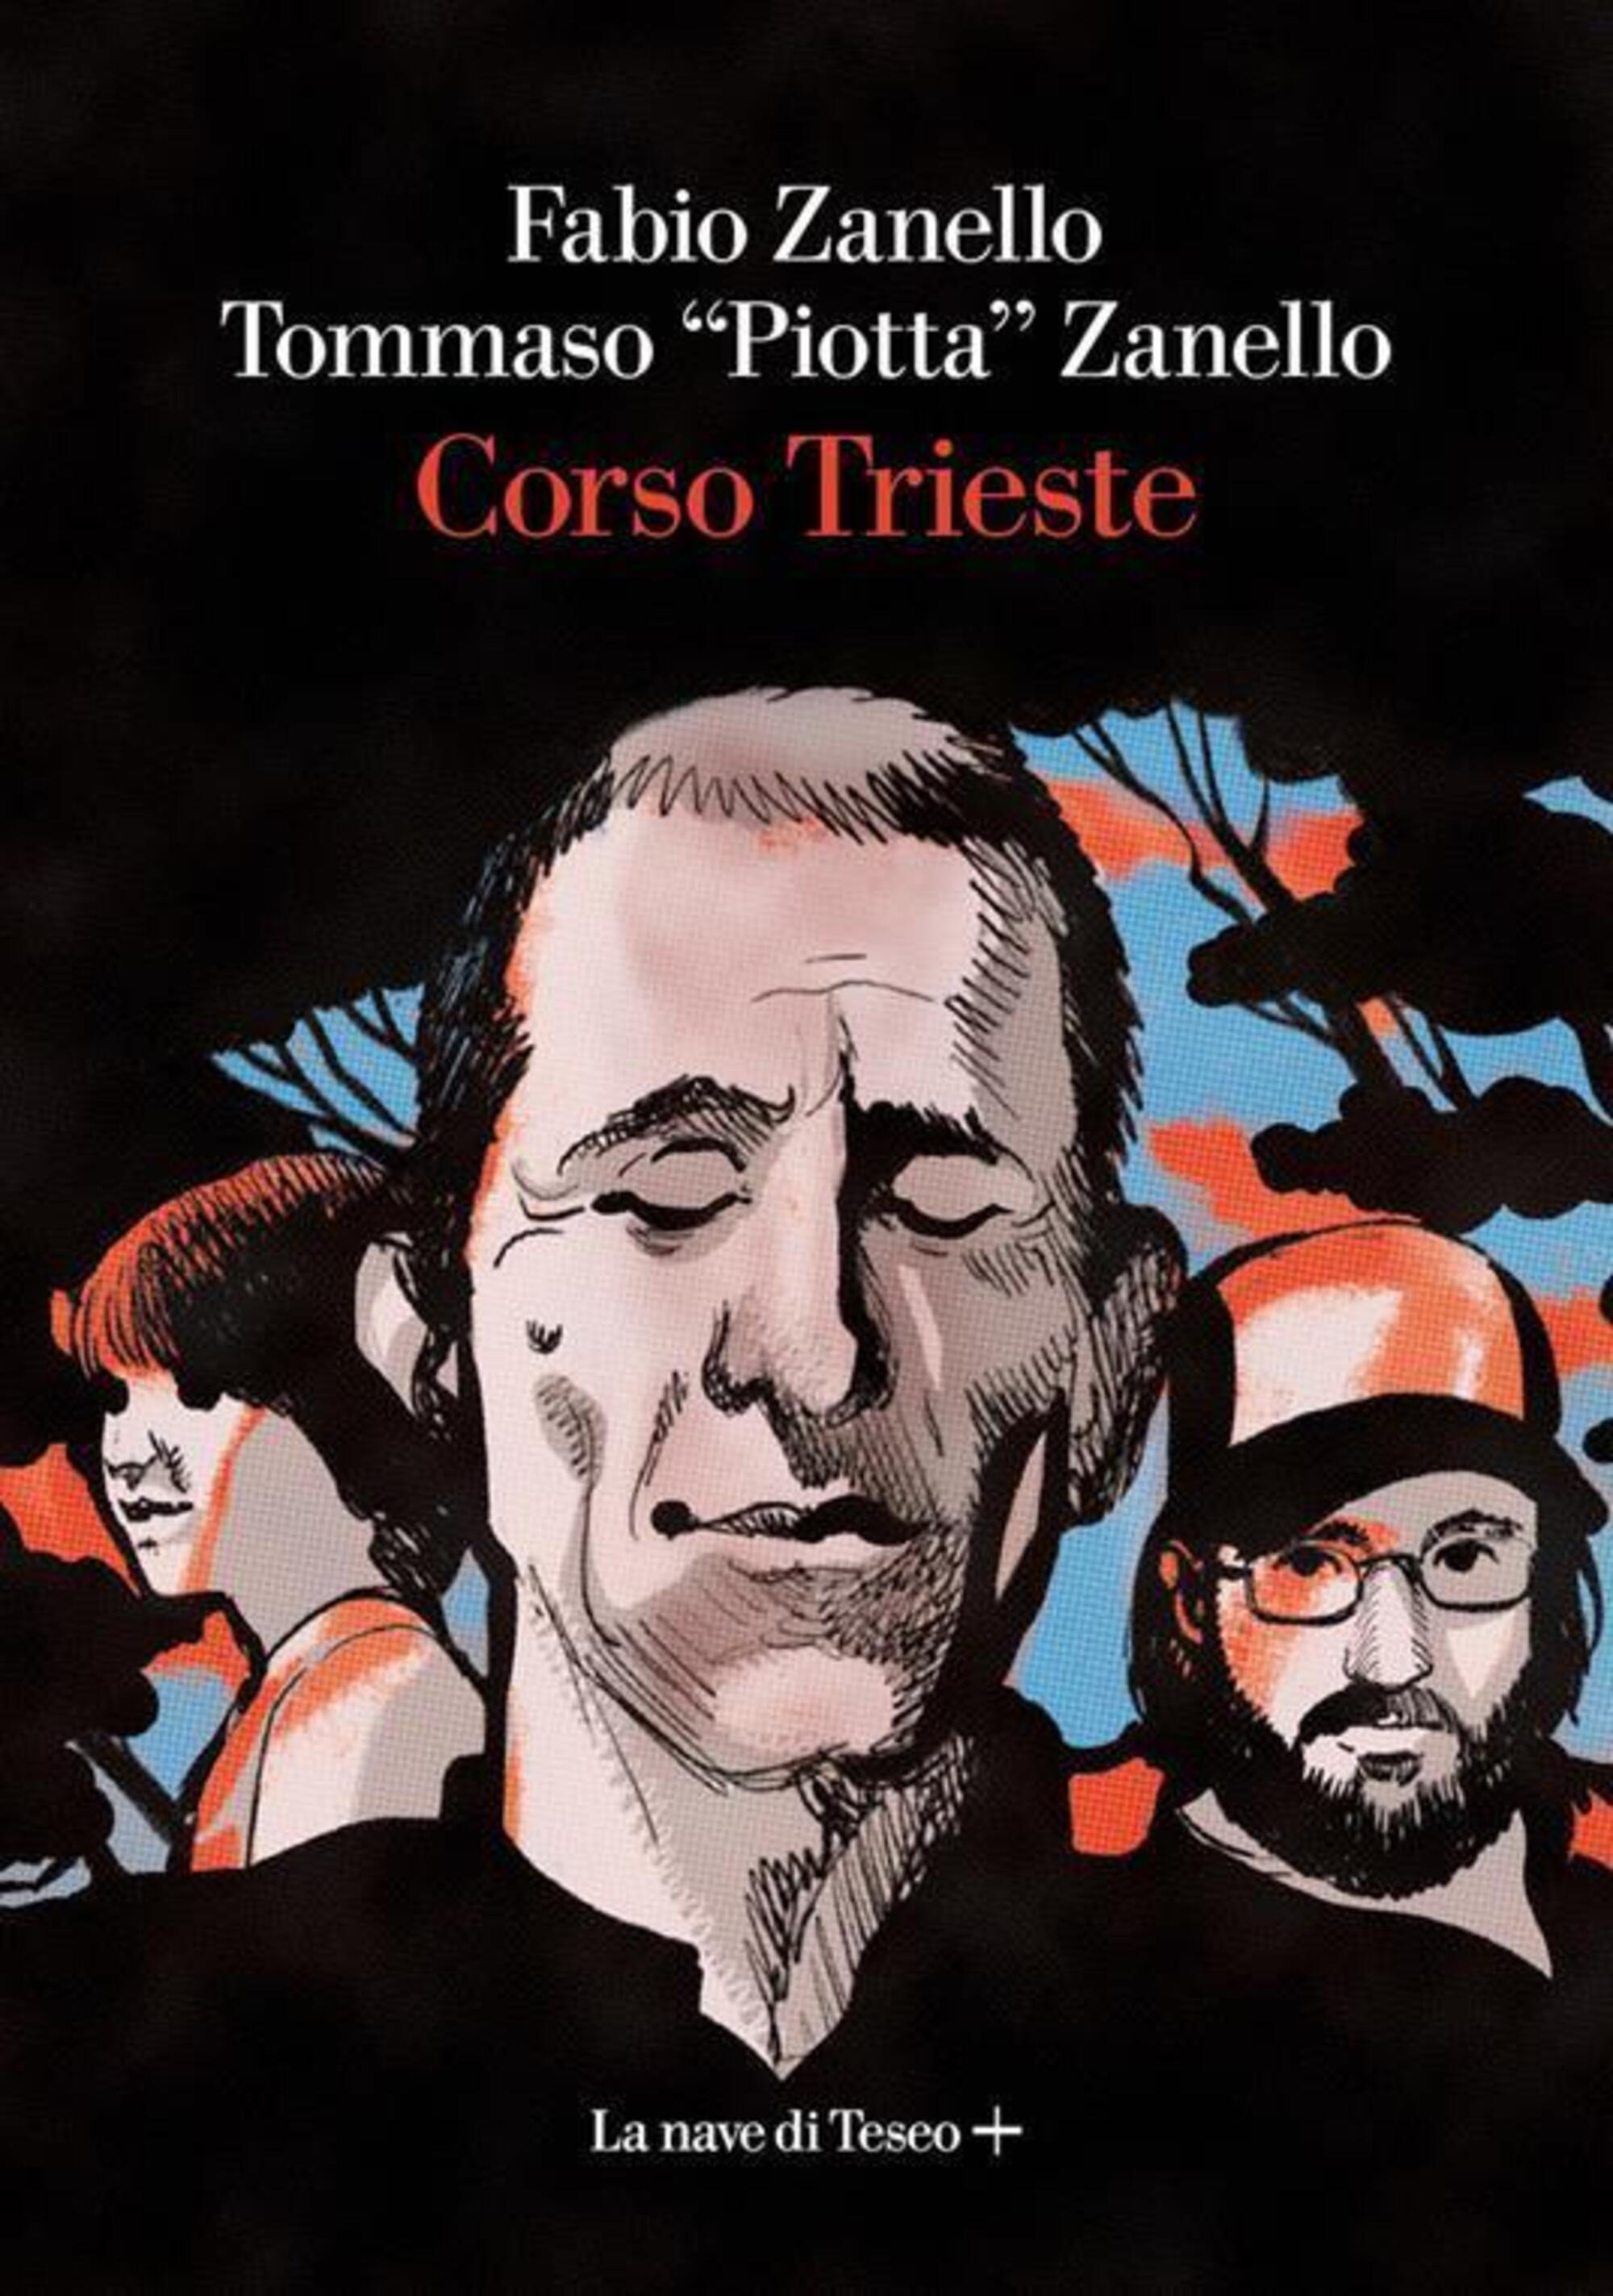 La copertina di &ldquo;Corso trieste&rdquo;, il libro di Fabio Zanello e Tommas (Piotta) Zanello per La nave di Teseo